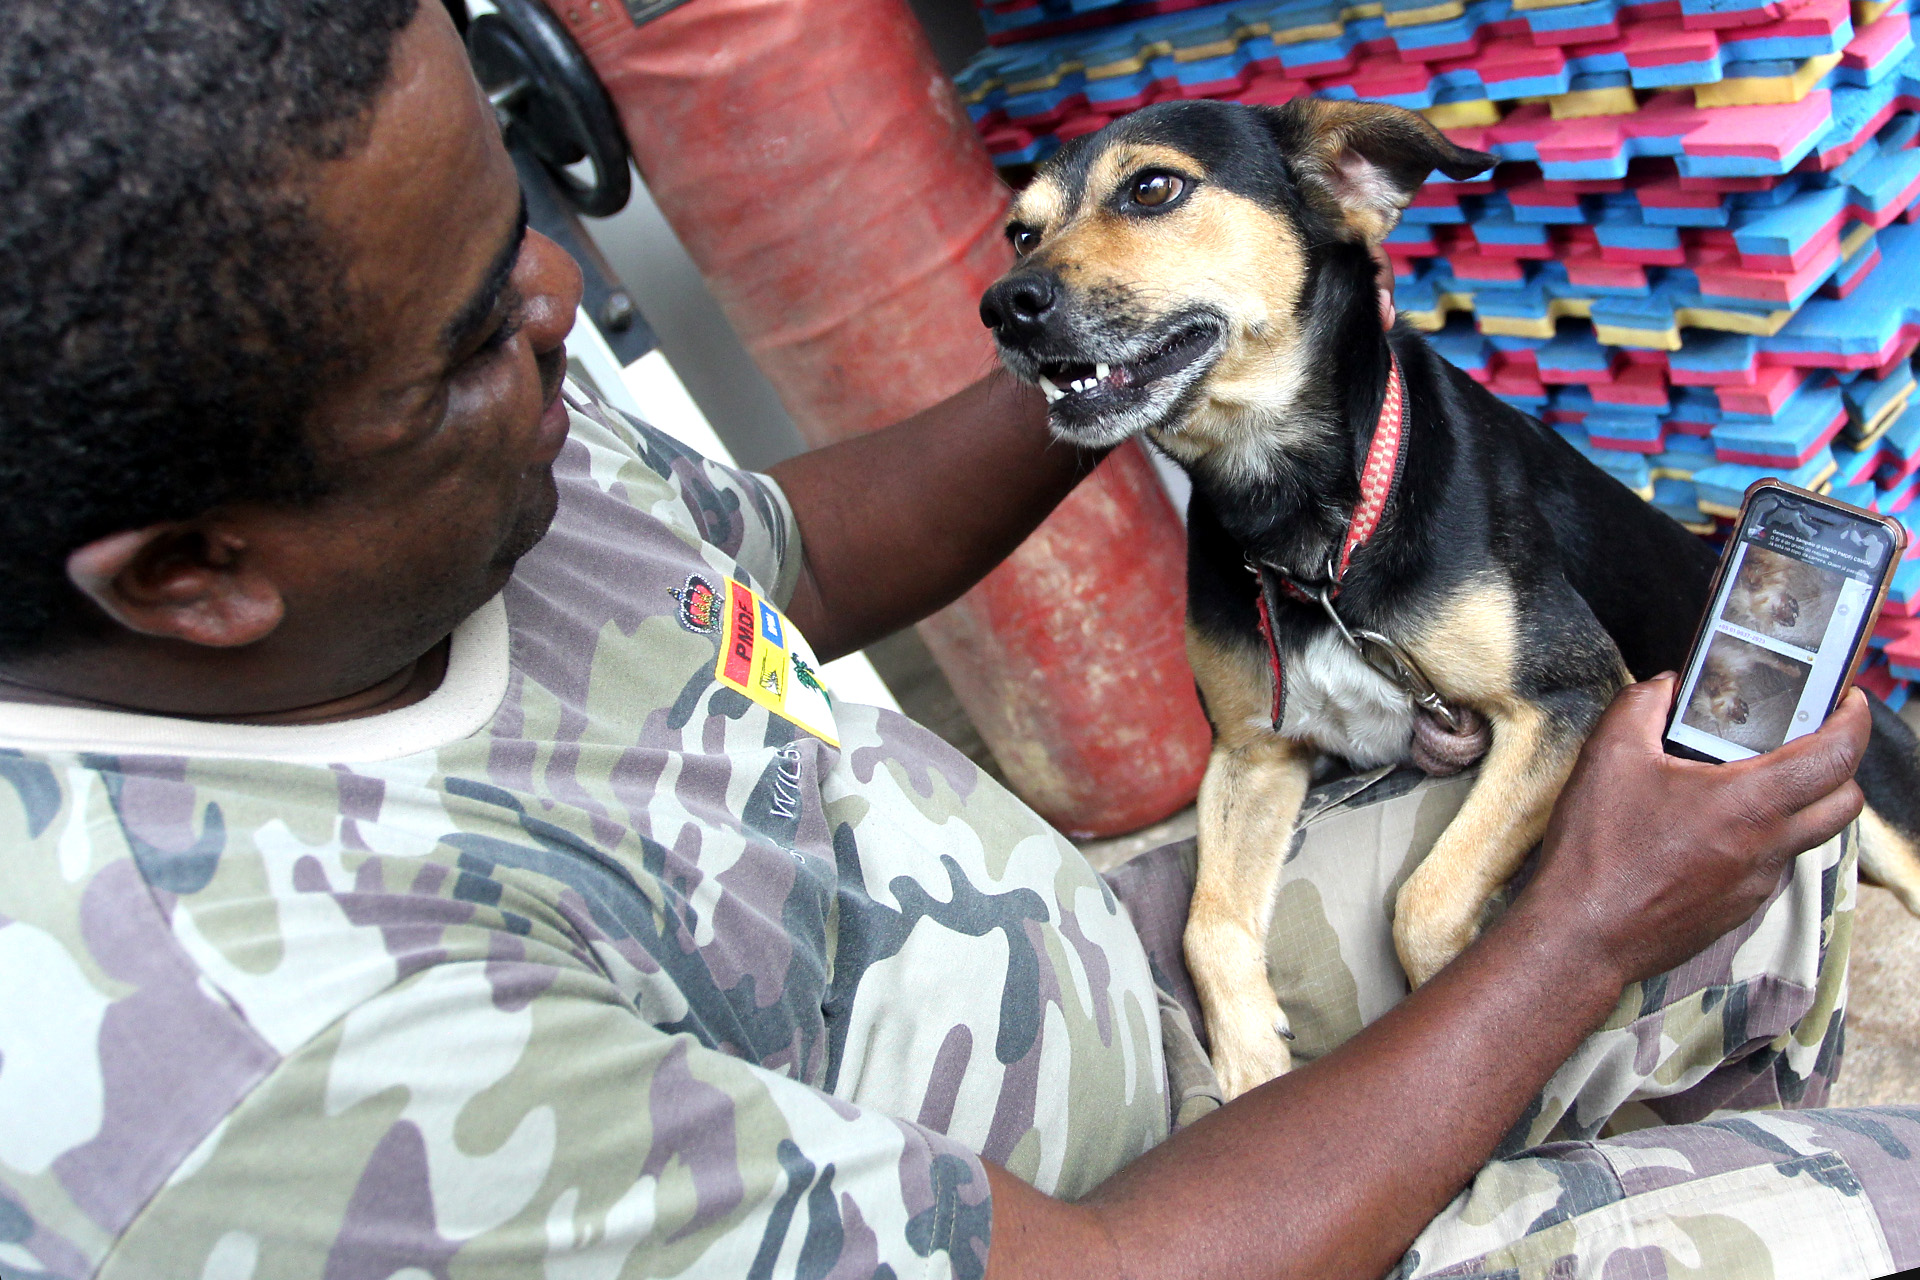 Duzentos e vinte cães e 30 gatos ganharam casa nova com a ajuda do Batalhão da Polícia Militar Ambiental desde junho deste ano, quando a corporação começou a usar também para adoção um grupo de WhatsApp que recebe denúncias de maus-tratos de animais.